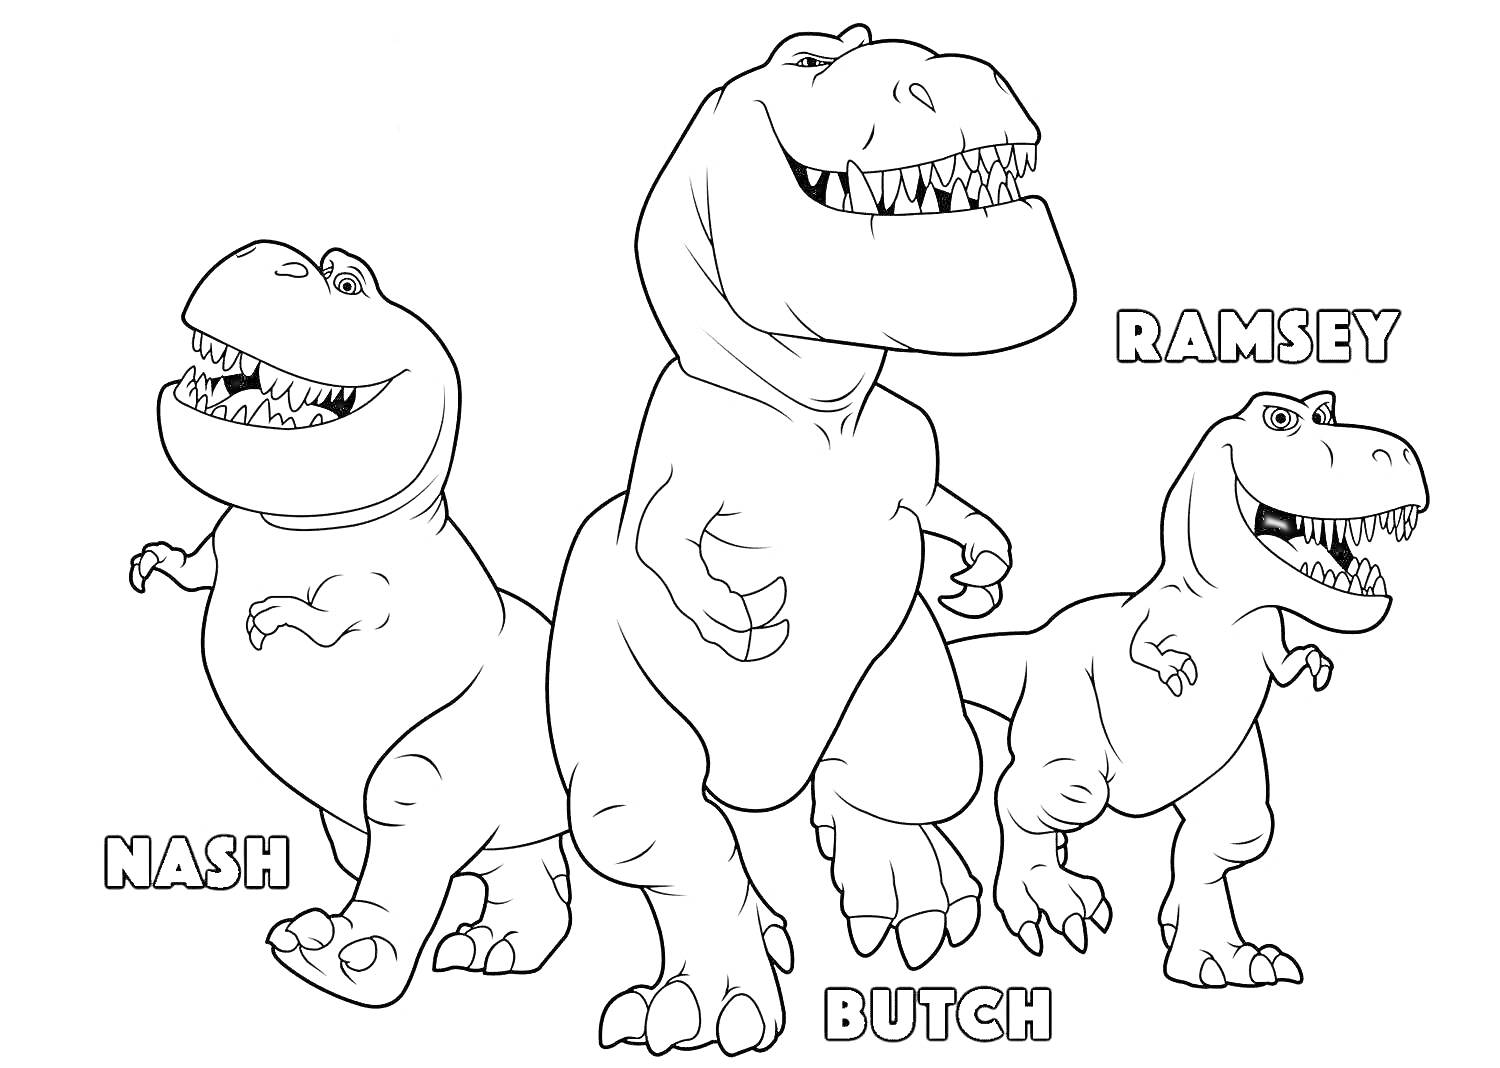  Три динозавра (Nash, Butch и Ramsey)